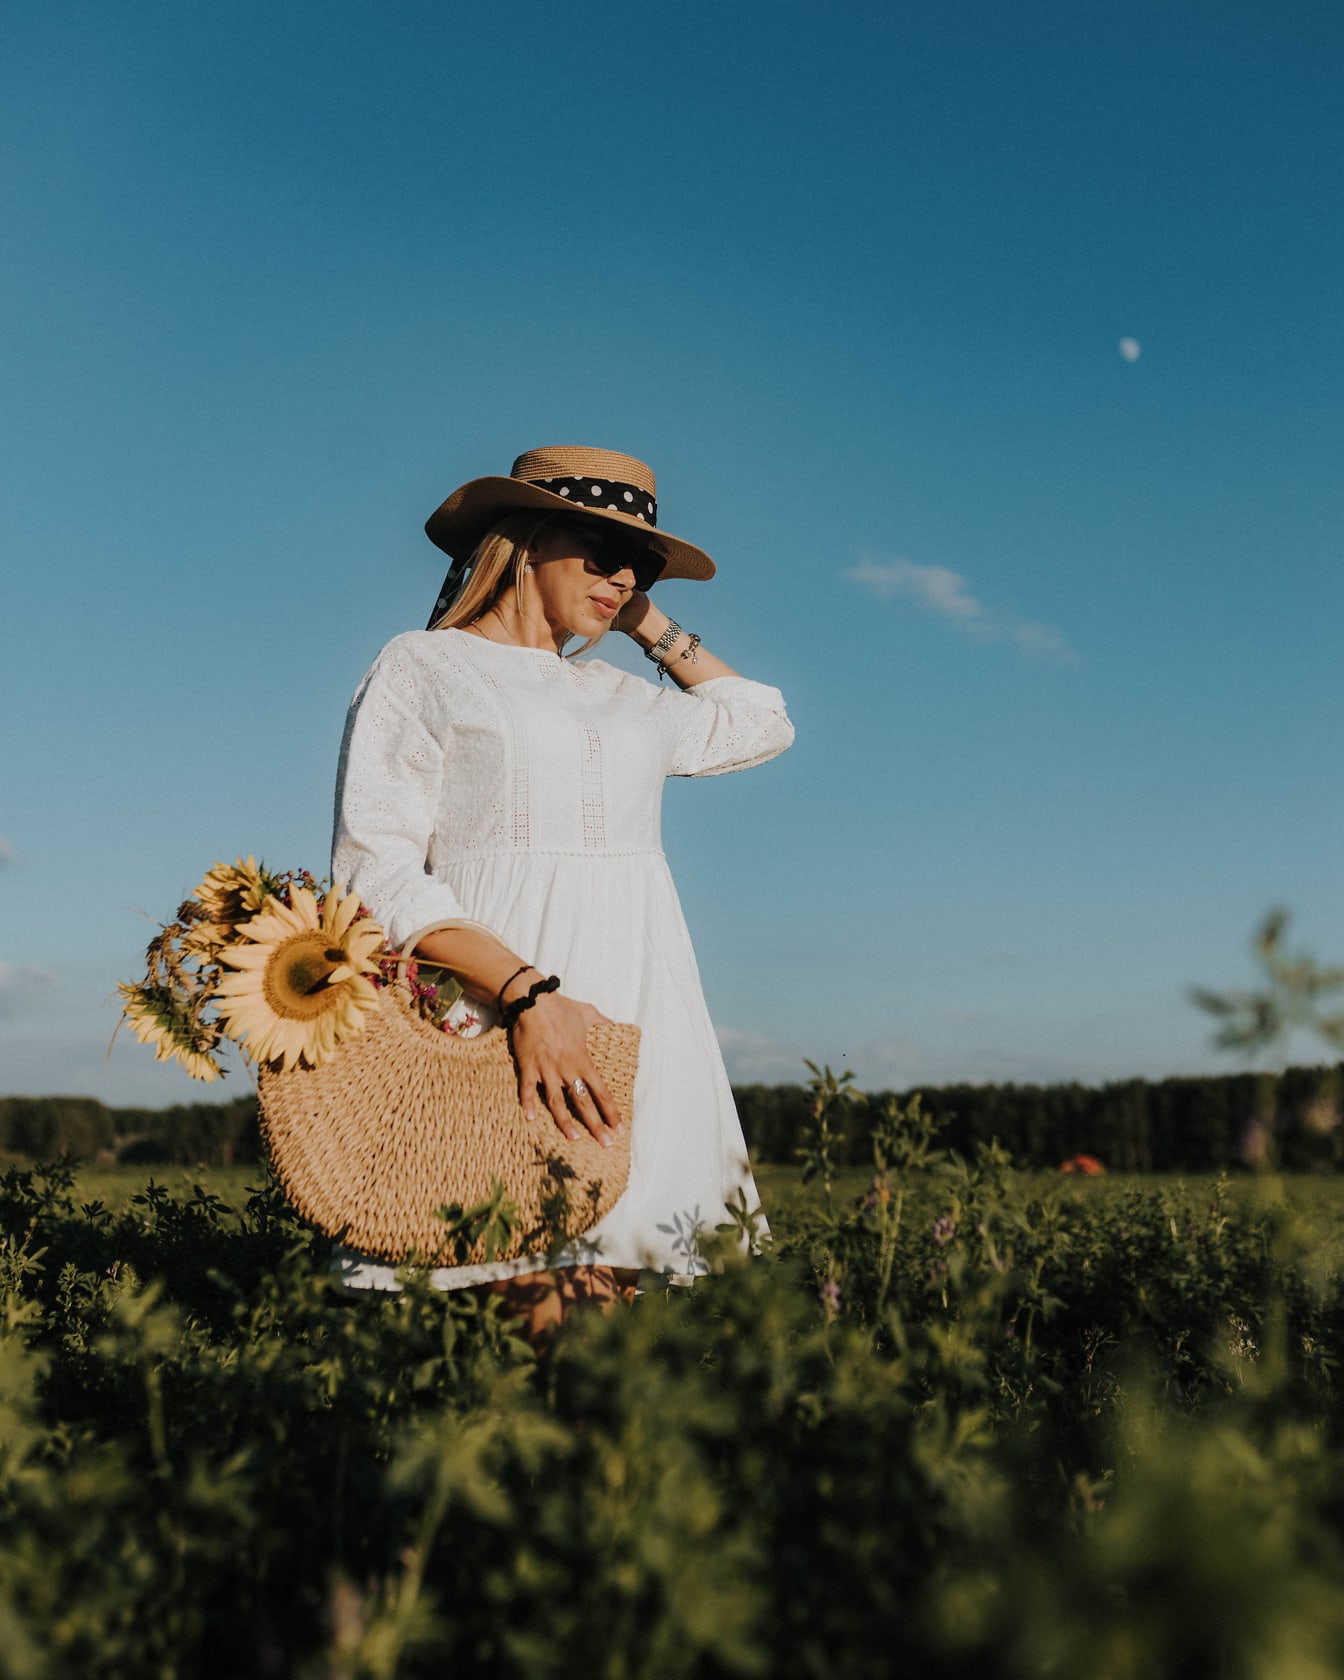 Modelo de foto con vestido de campo blanco y sombrero de paja